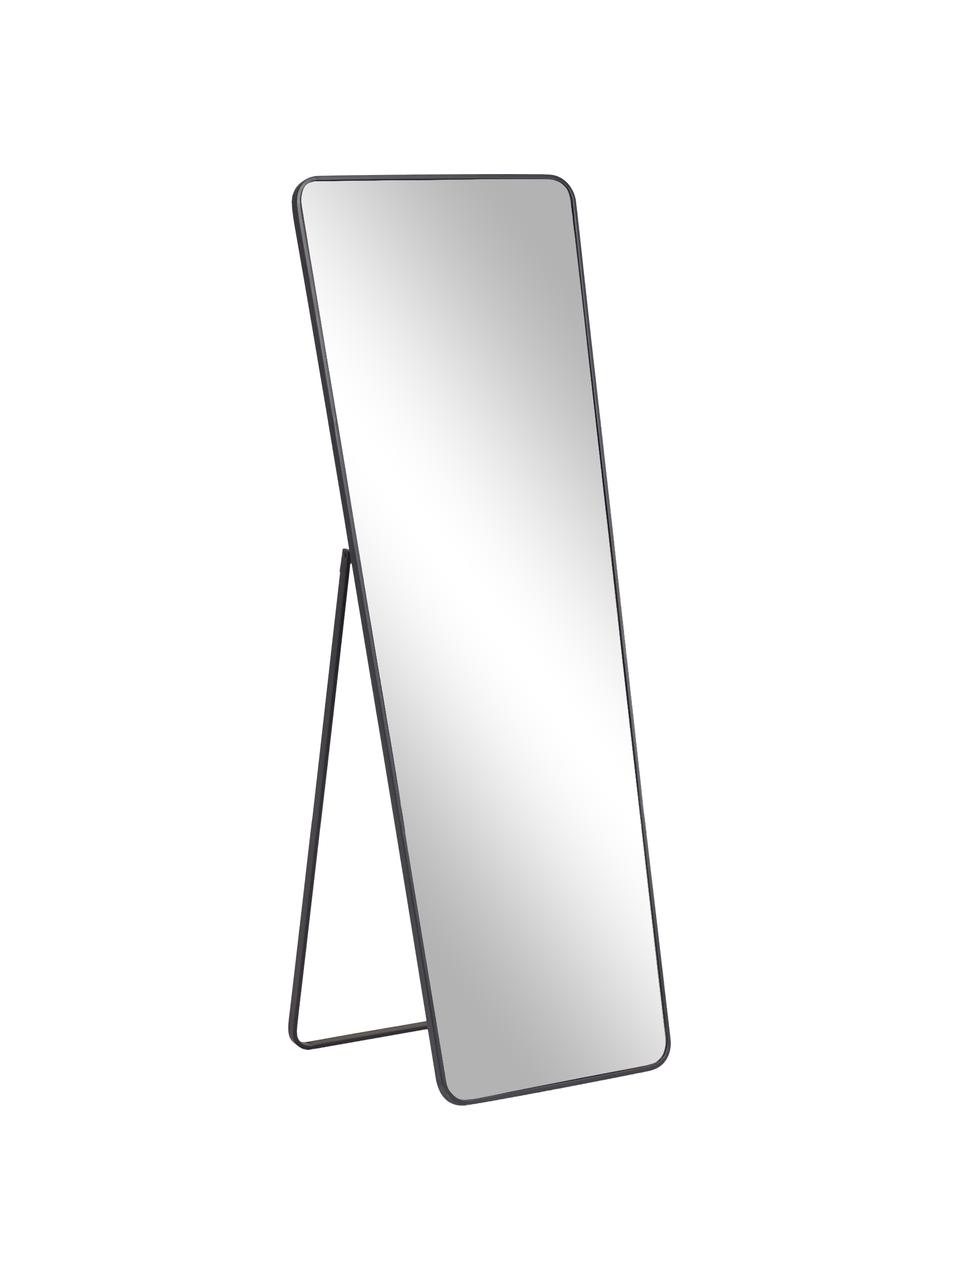 Stojacie zrkadlo s kovovým rámom Nyah, Čierna, Š 64 x V 170 cm